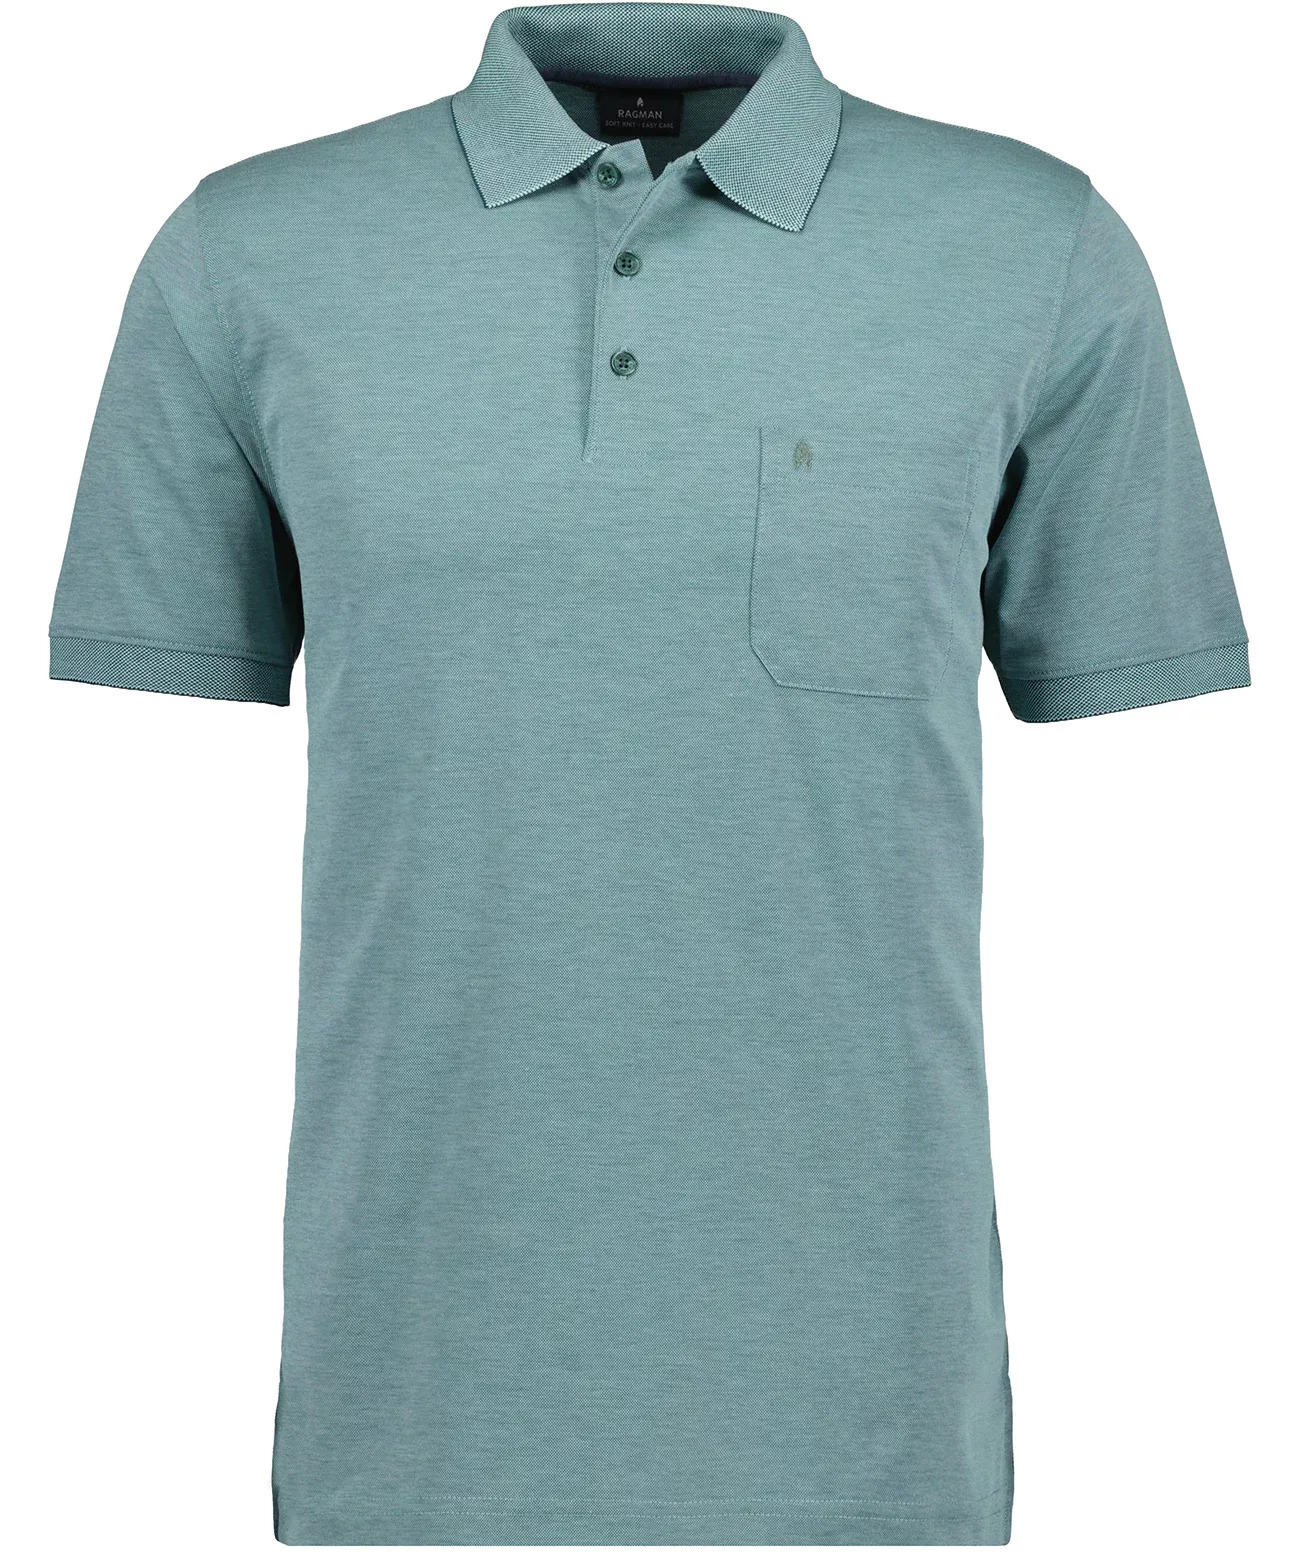 RAGMAN Polo-Shirt 540391/344 günstig online kaufen